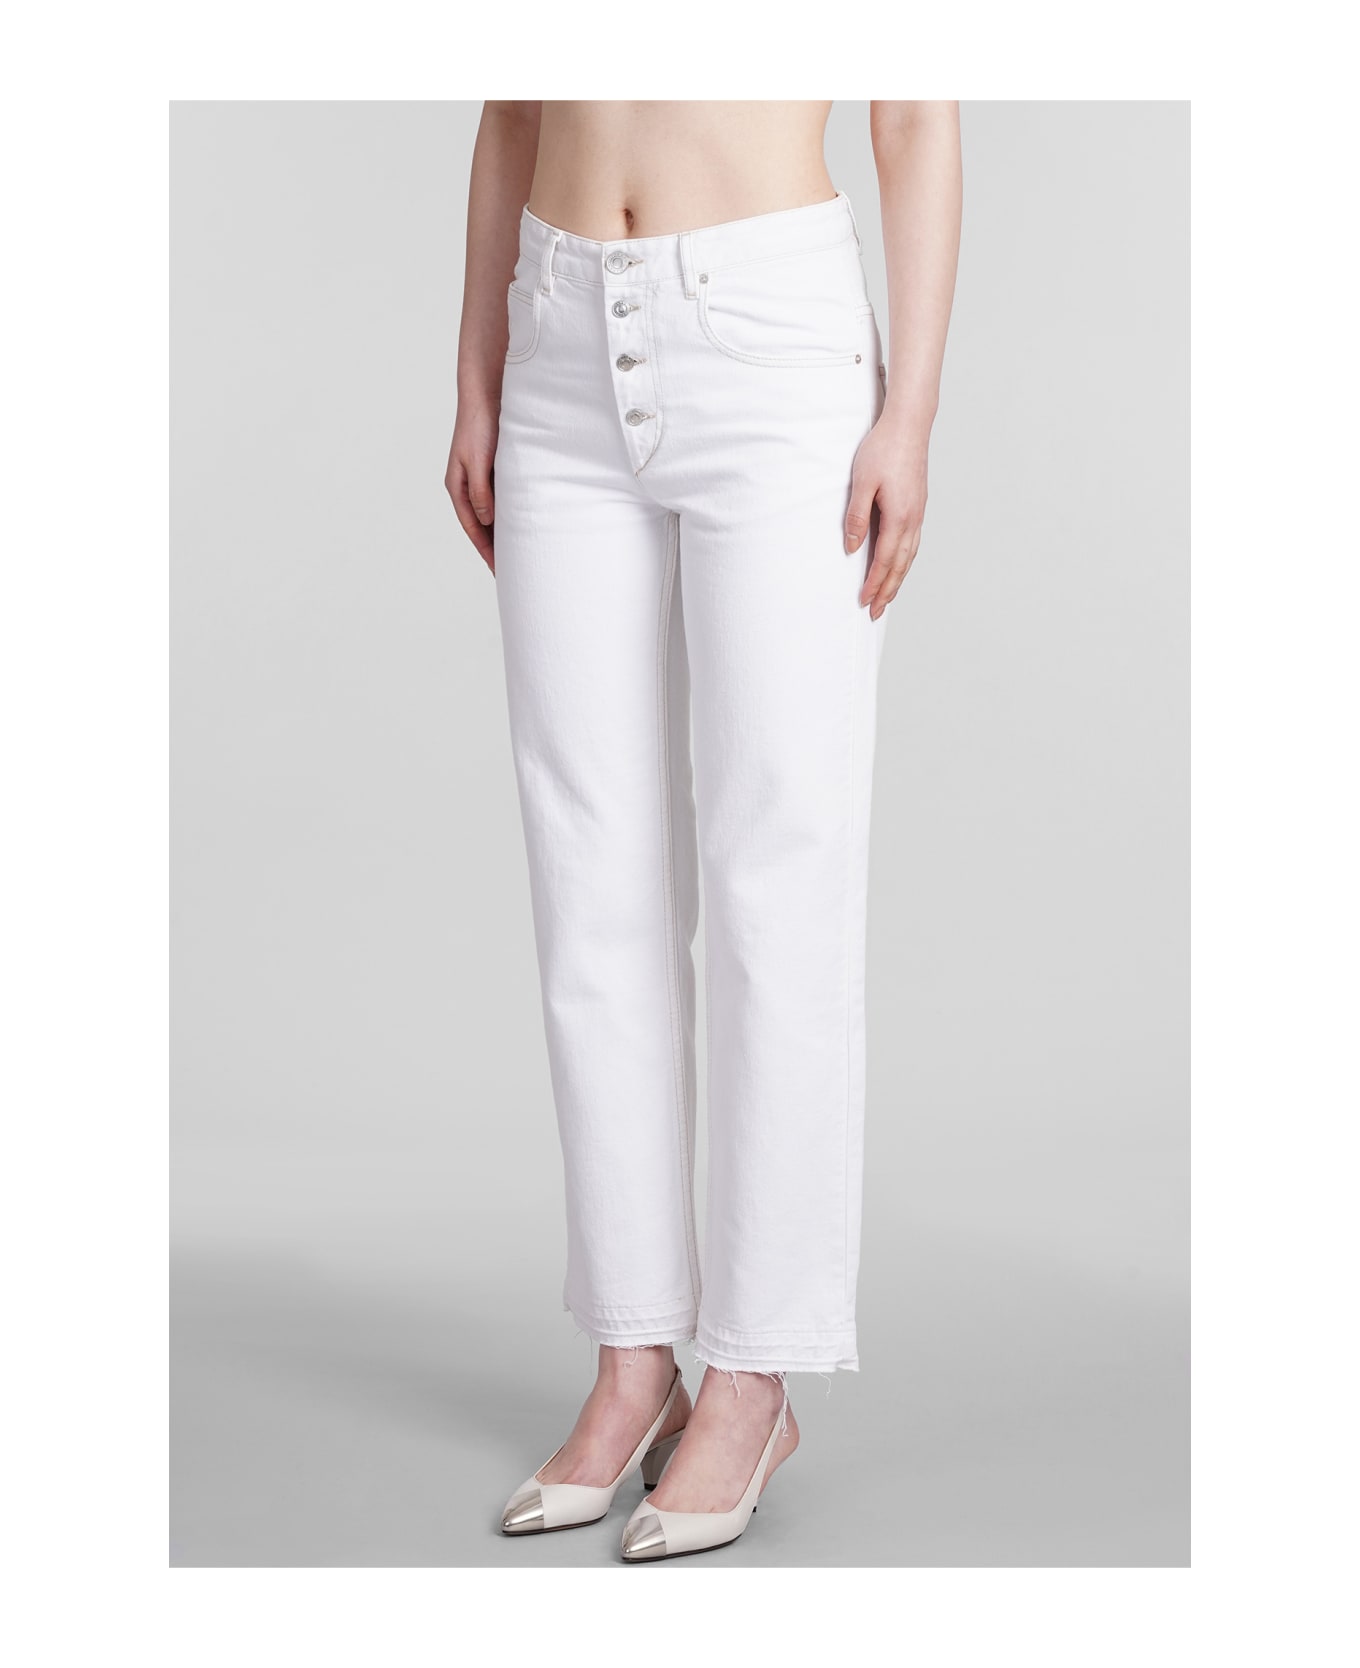 Isabel Marant Jemina Jeans - white ボトムス